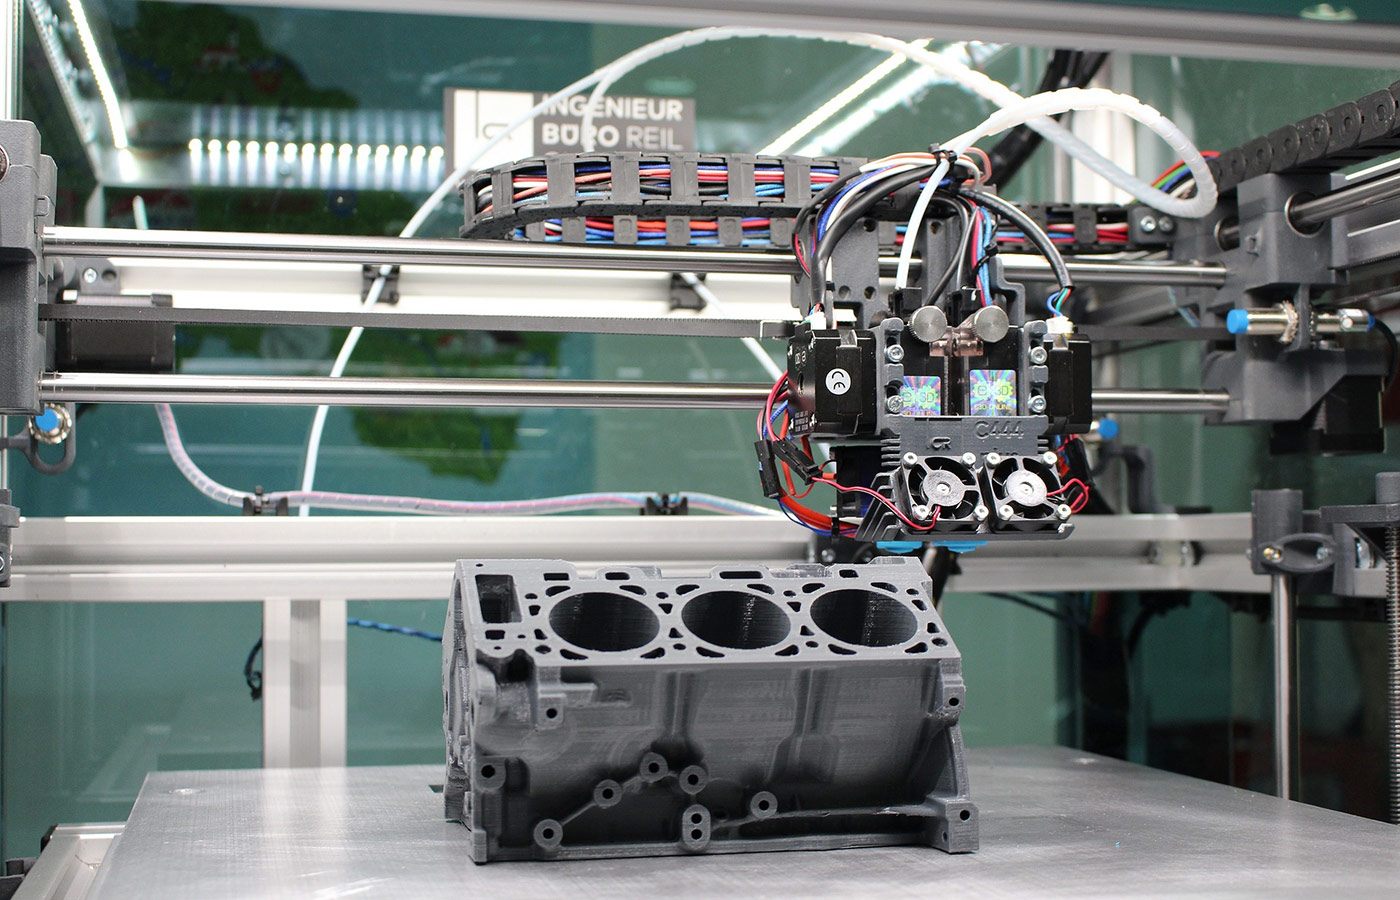 Uma impressora 3D, uma máquina que é utilizada na indústria 4.0